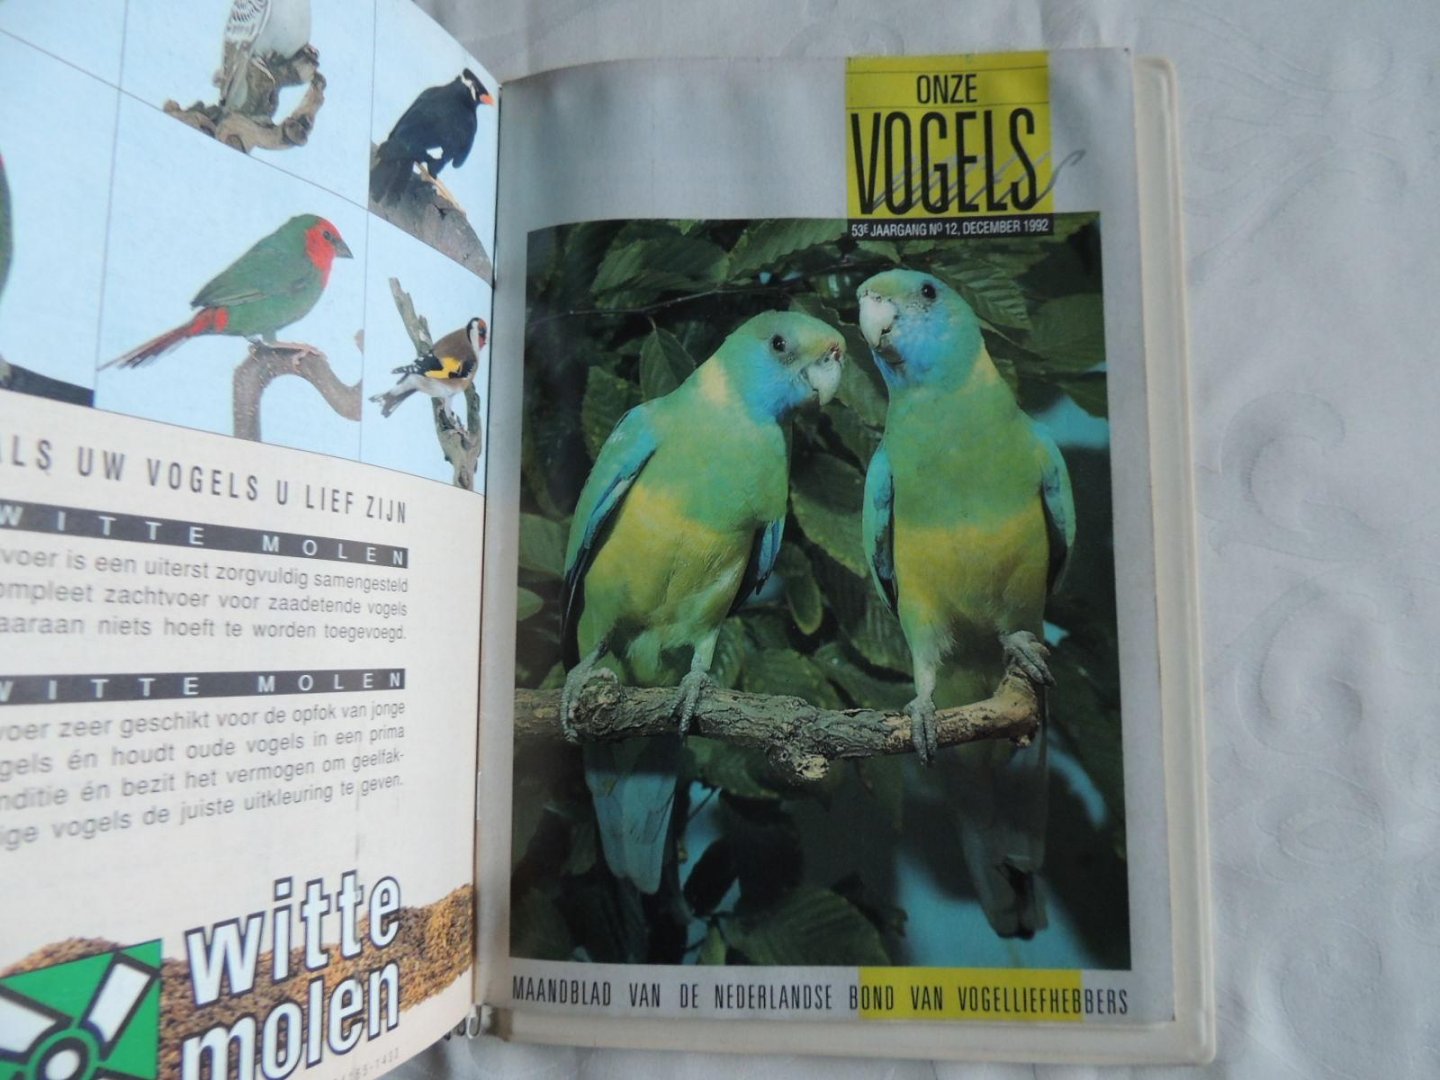 REDACTIE MAANDBLAD - Nederlandse Bond voor Vogelliefhebbers - Onze vogels. Maandblad van de nederlandse bond van vogelliefhebbers. 1992, 1993, 1994, 1995, 1996, 1997, 1998, 1999, 2000, 2001.